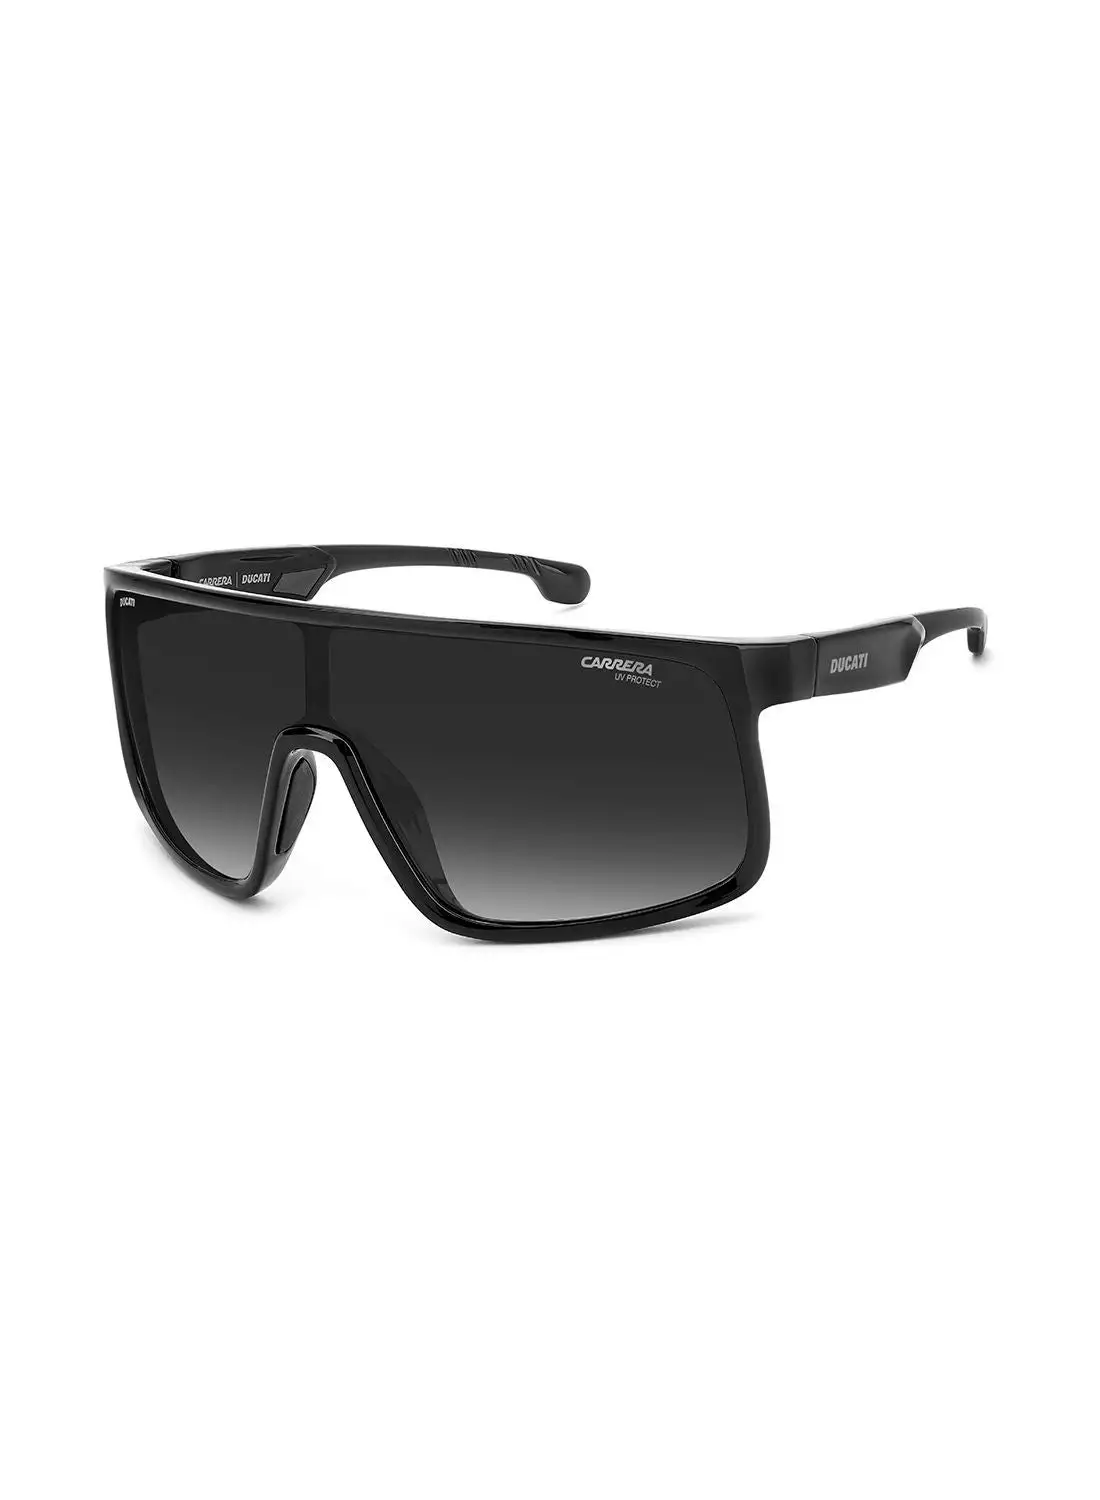 نظارة كاريرا للرجال للحماية من الأشعة فوق البنفسجية - Carduc 017/S Black 99 - مقاس العدسة: 99 ملم